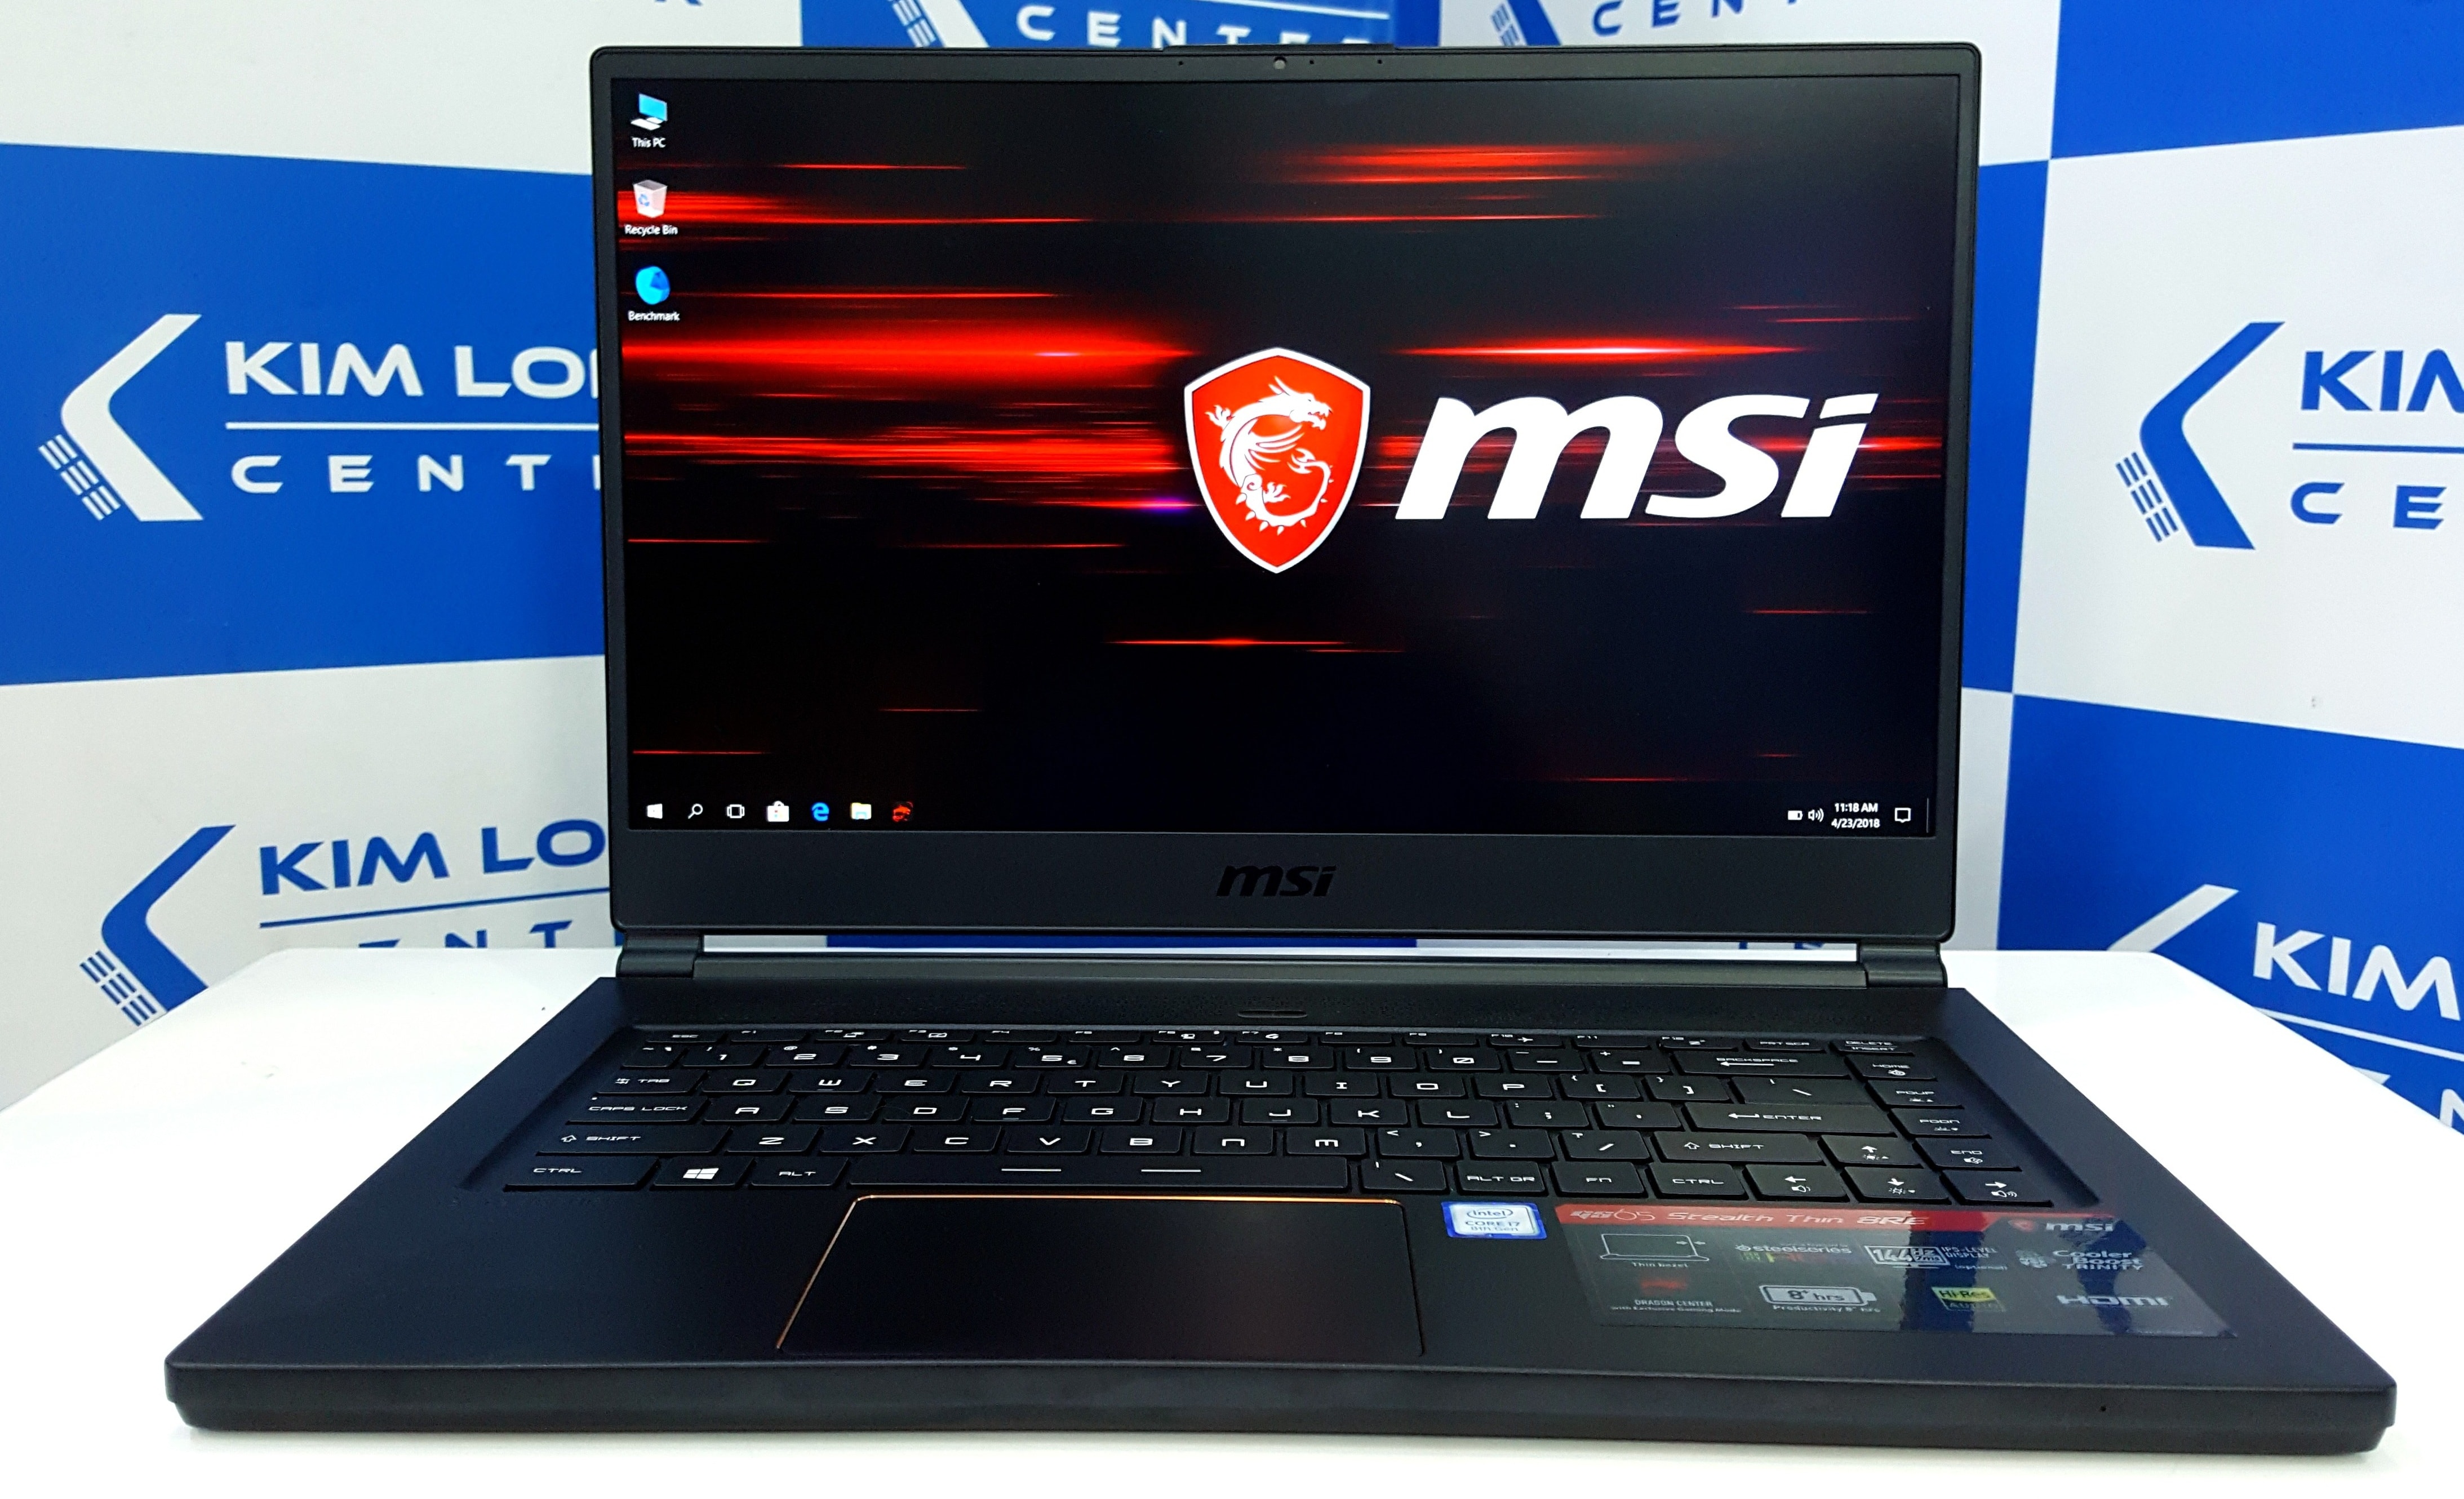 Đánh Giá Laptop MSI GS65 i7 8750H